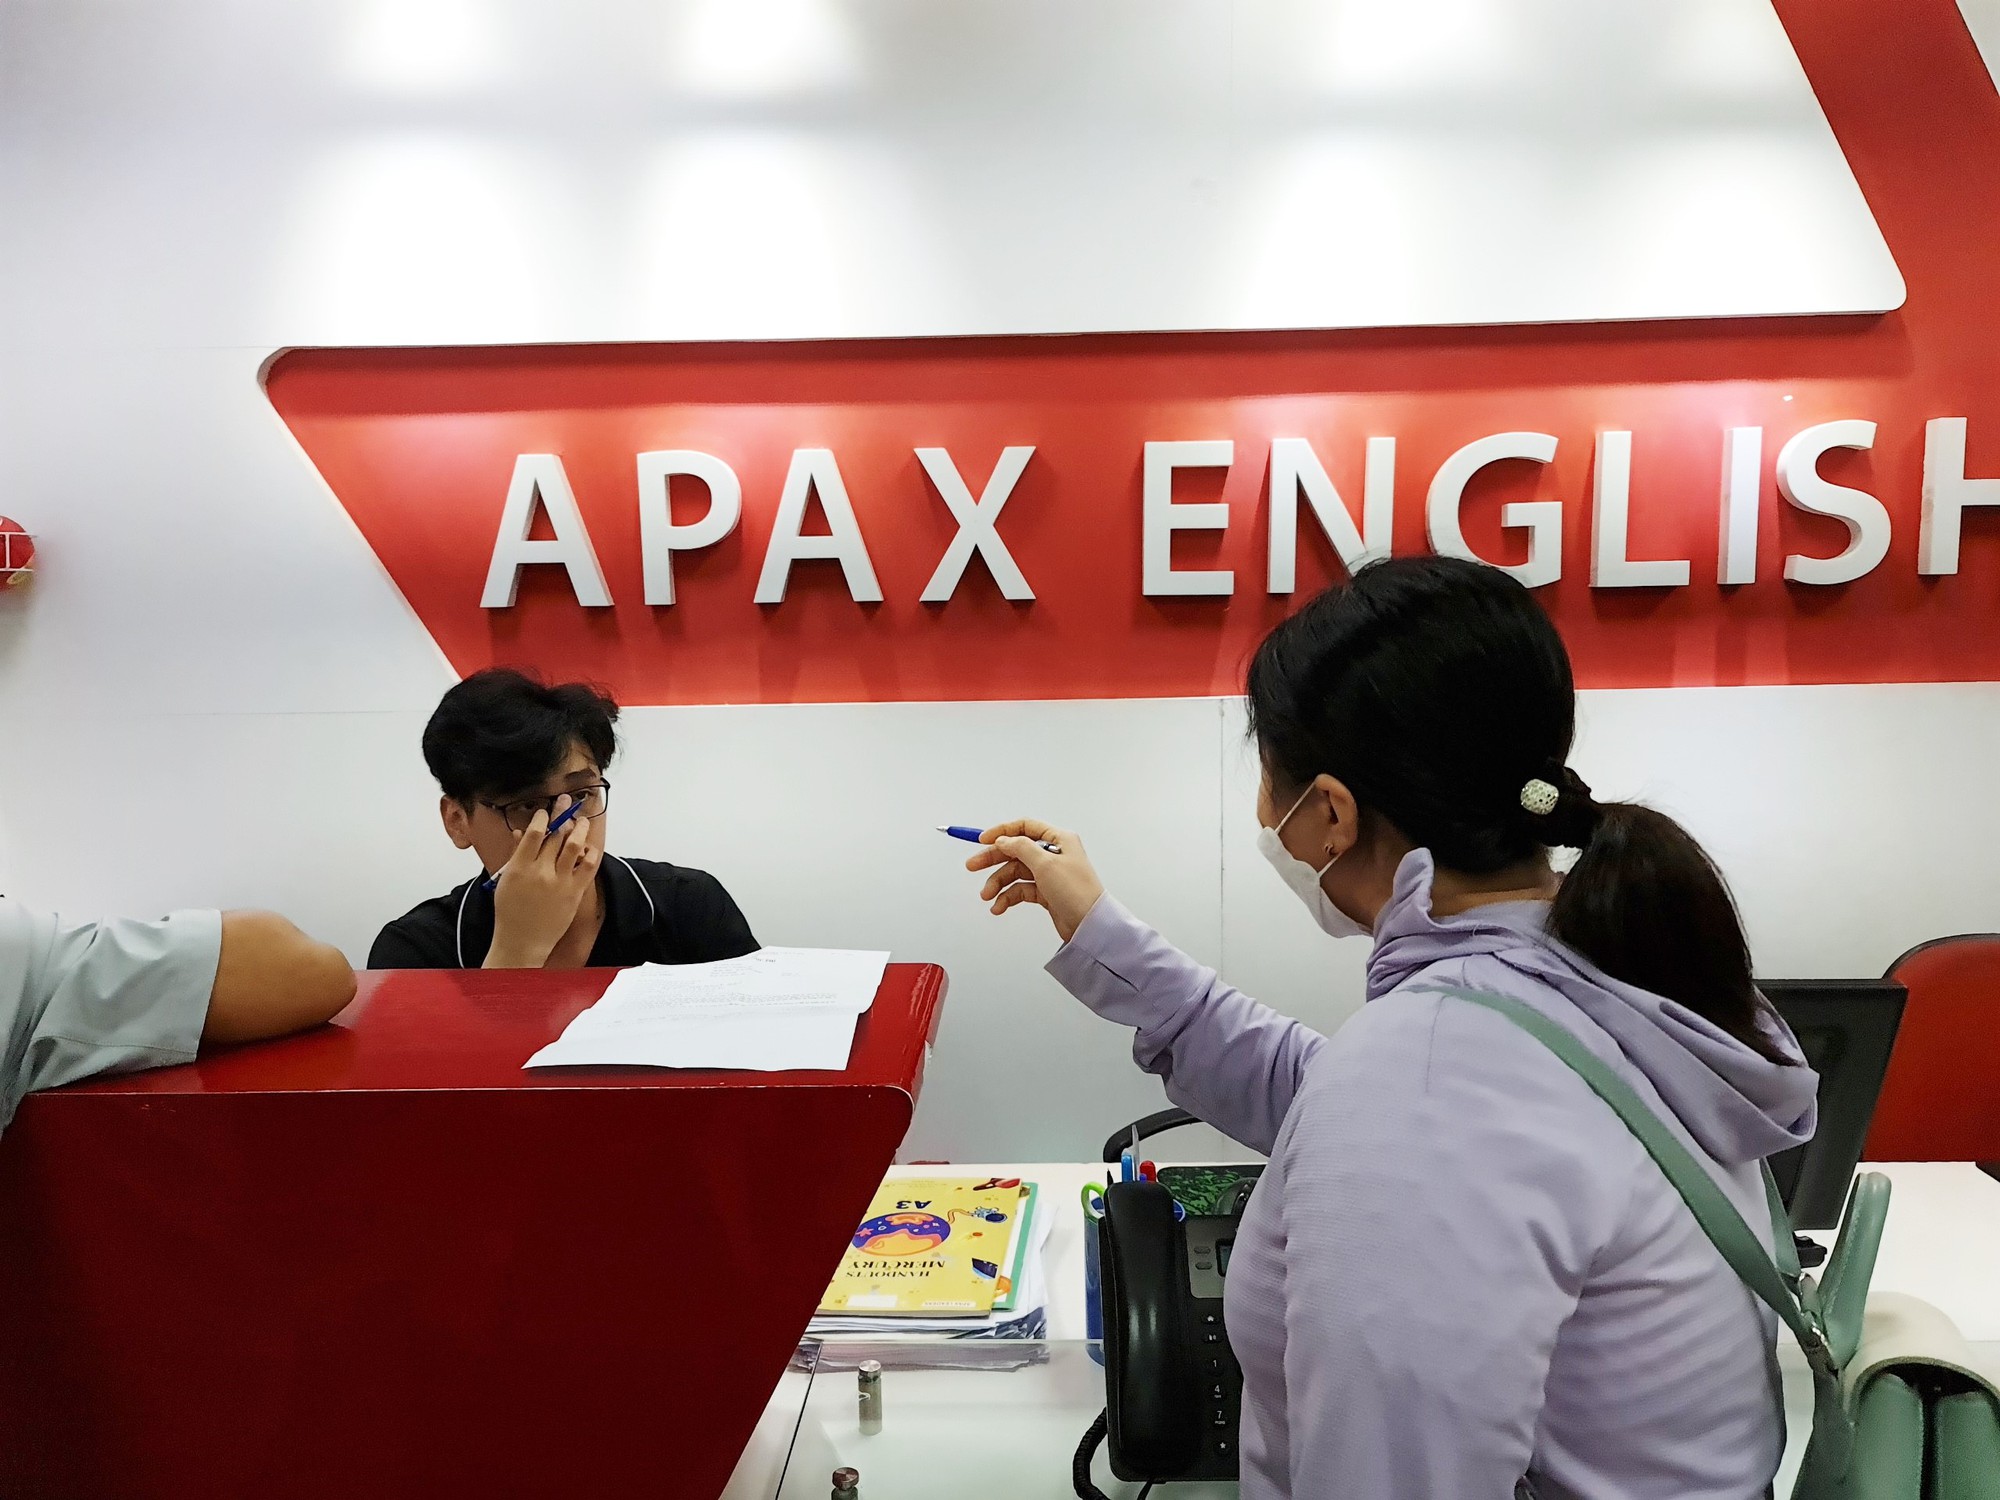 Nếu bạn đang muốn cải thiện kỹ năng tiếng Anh của mình, Trung tâm tiếng Anh Apax English là lựa chọn hoàn hảo. Với phương pháp giảng dạy hiện đại và giáo viên nhiệt tình, bạn sẽ nhanh chóng đạt được mục tiêu của mình. Hãy xem bức ảnh để tìm hiểu thêm về trung tâm này!